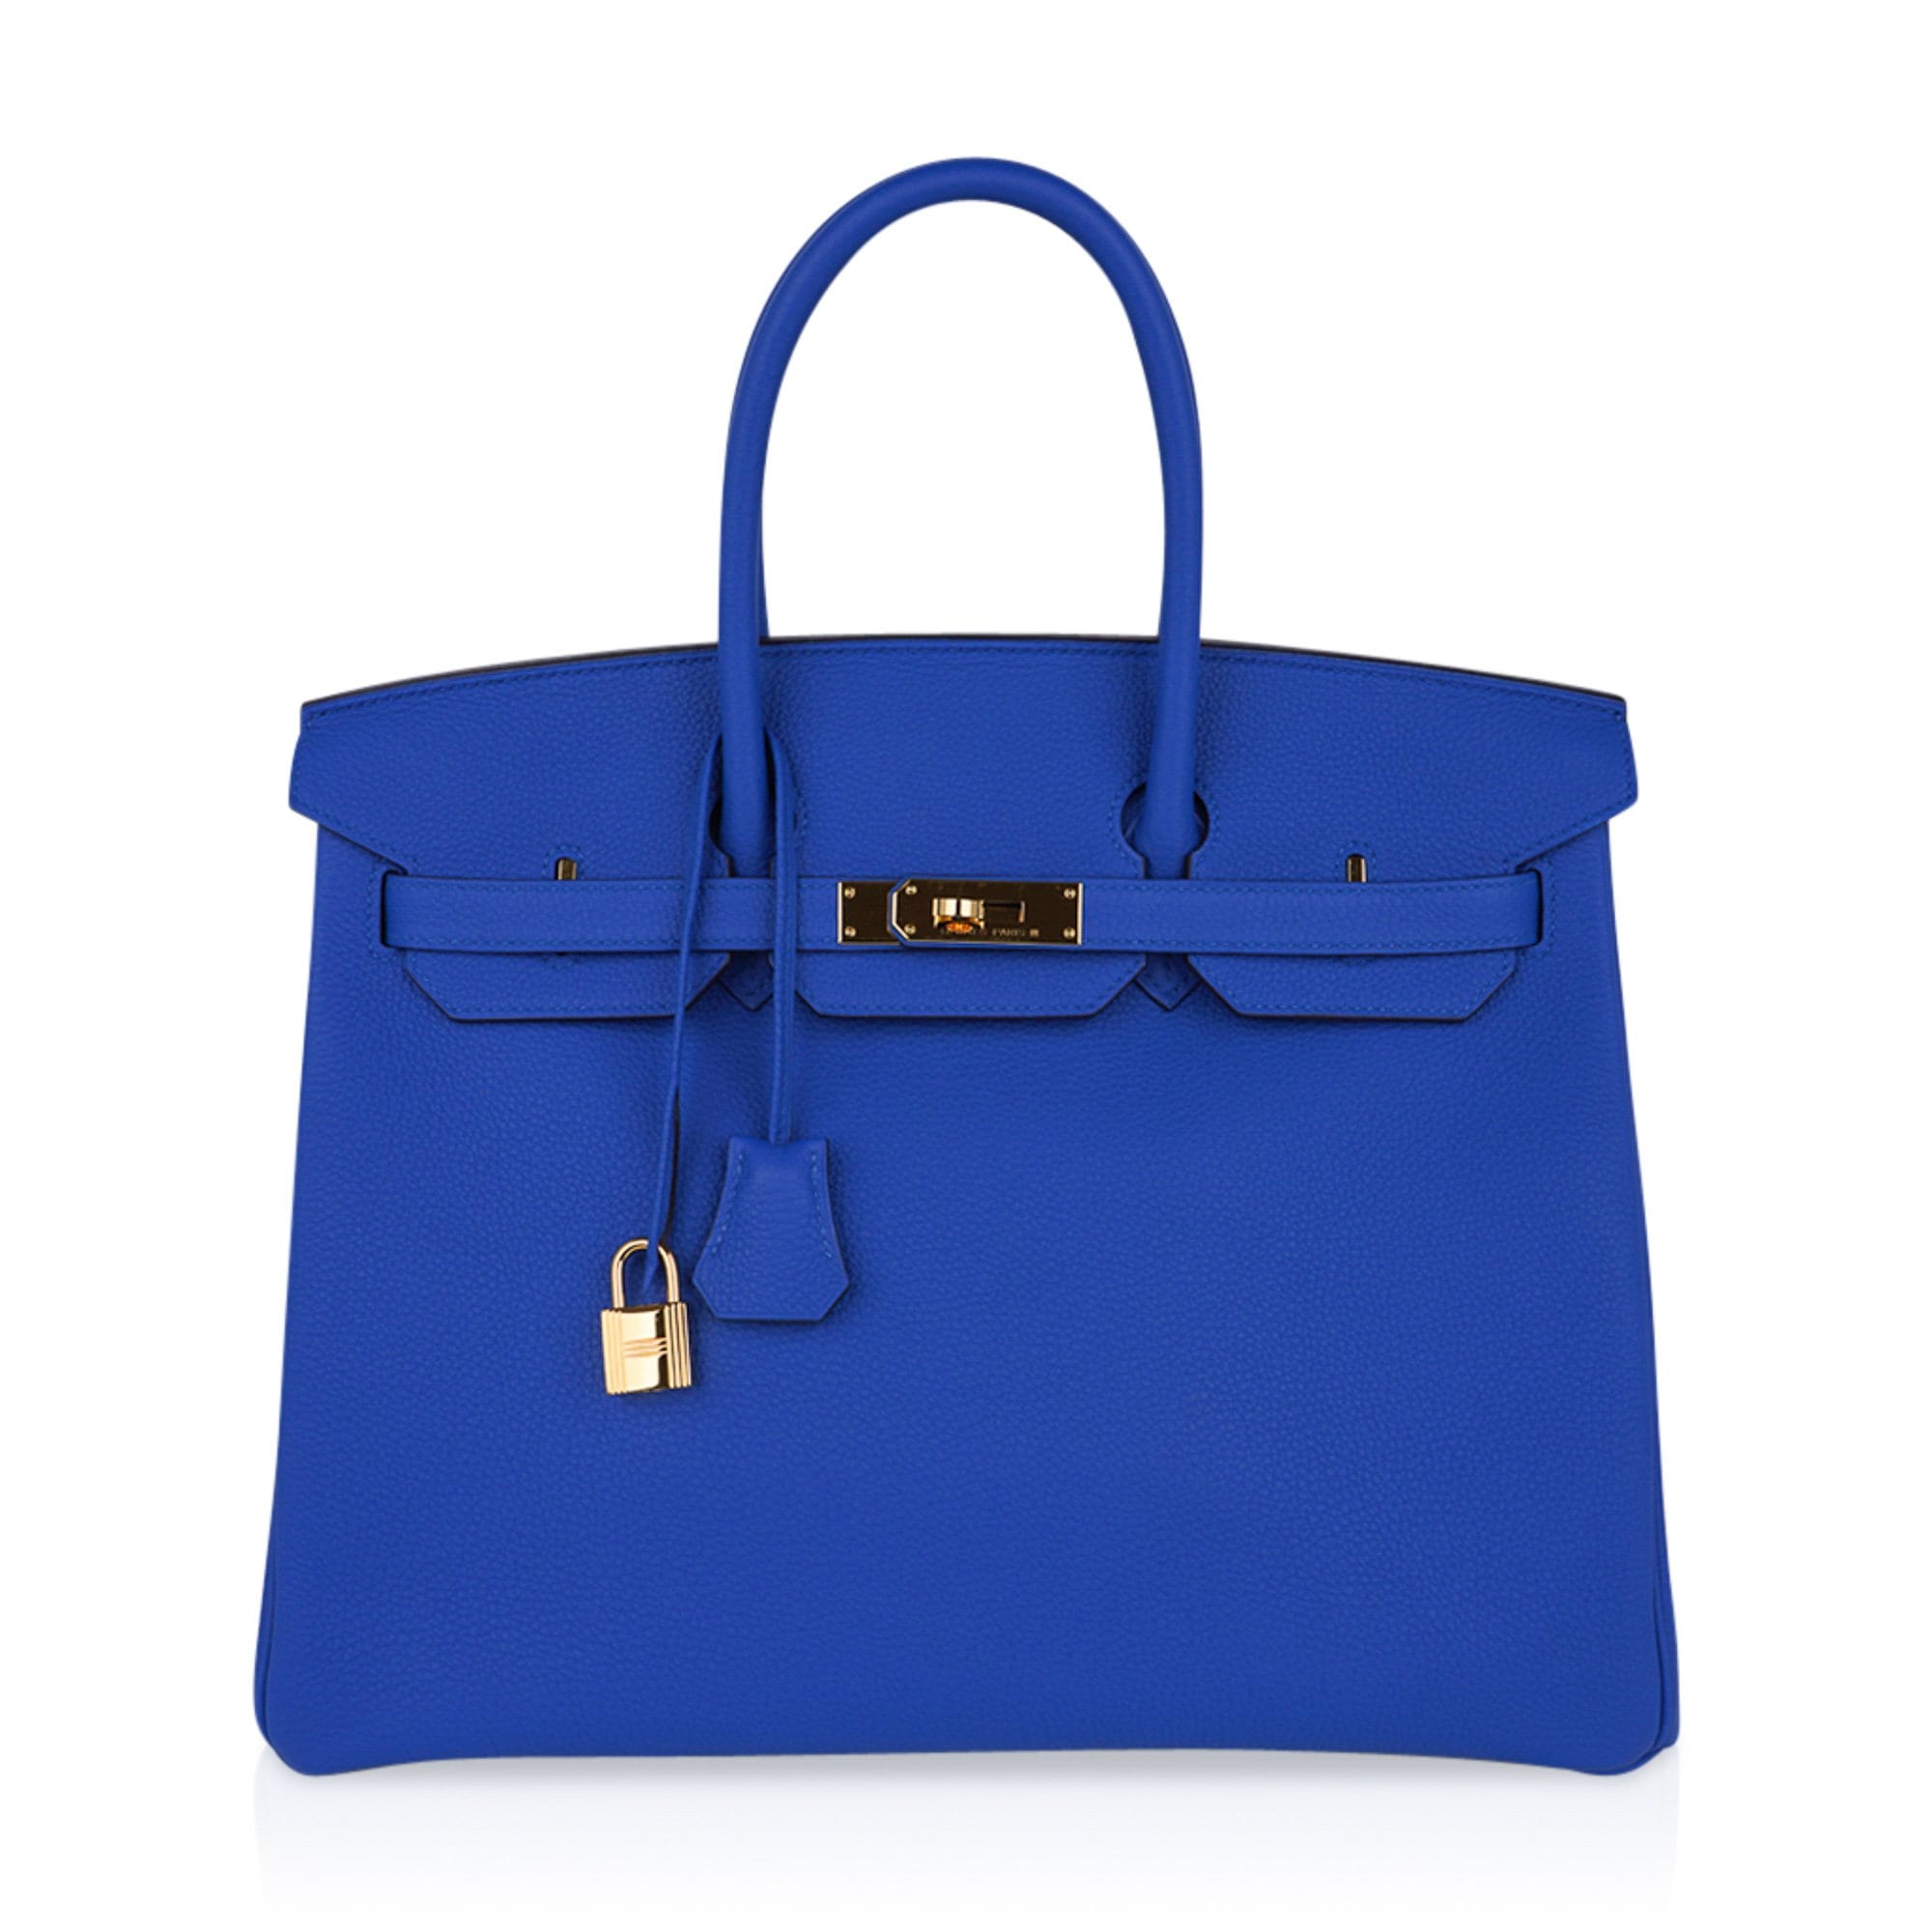 Handbags Hermès Birkin 35